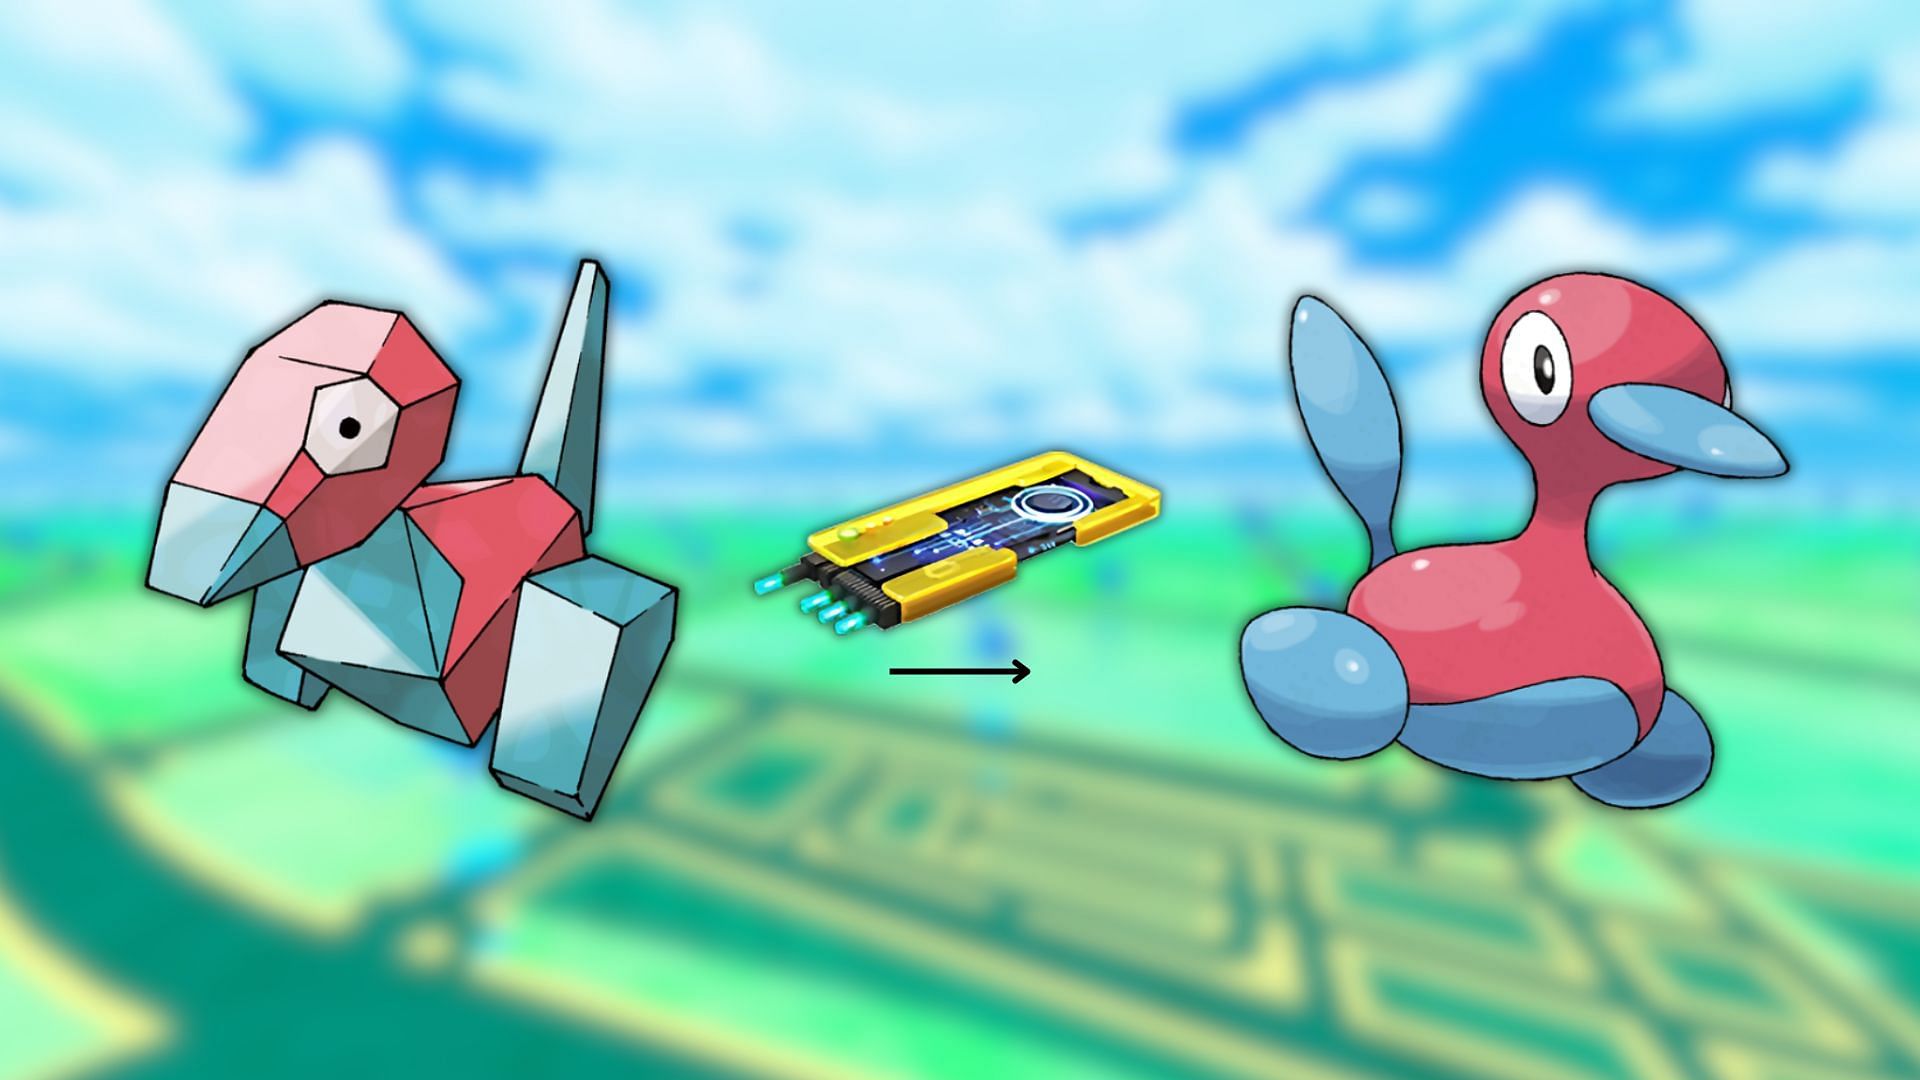 L'Upgrade è un elemento chiave per far evolvere Porygon (Immagine tramite The Pokemon Company)